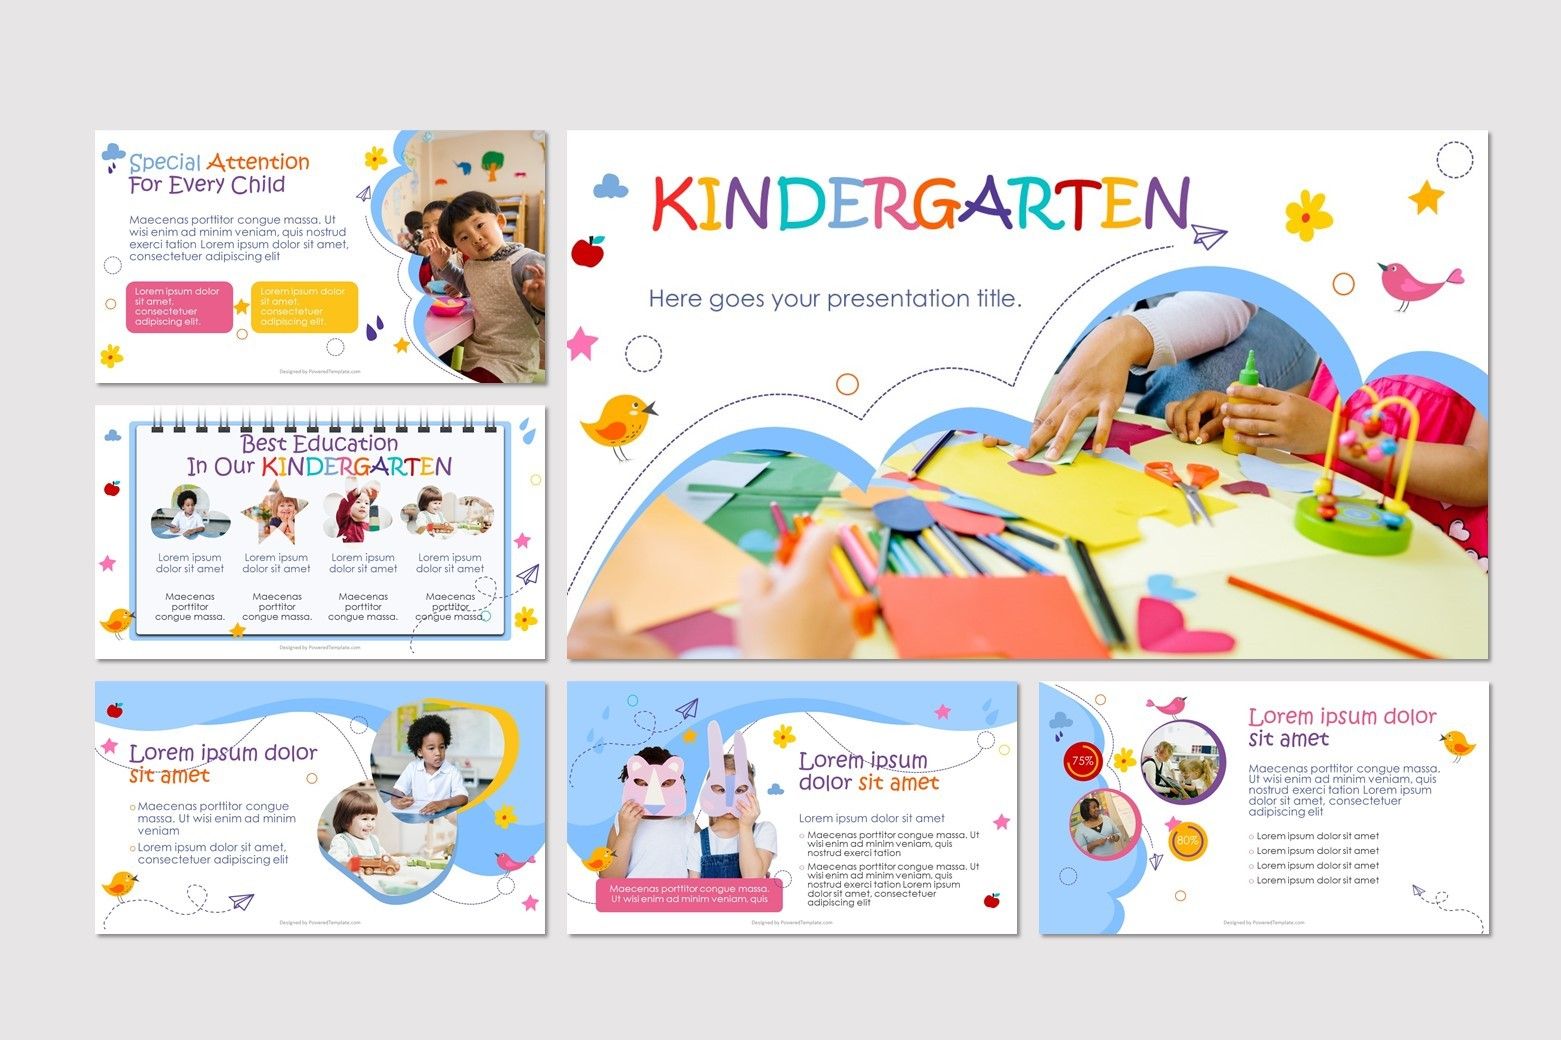 ppt on kindergarten education